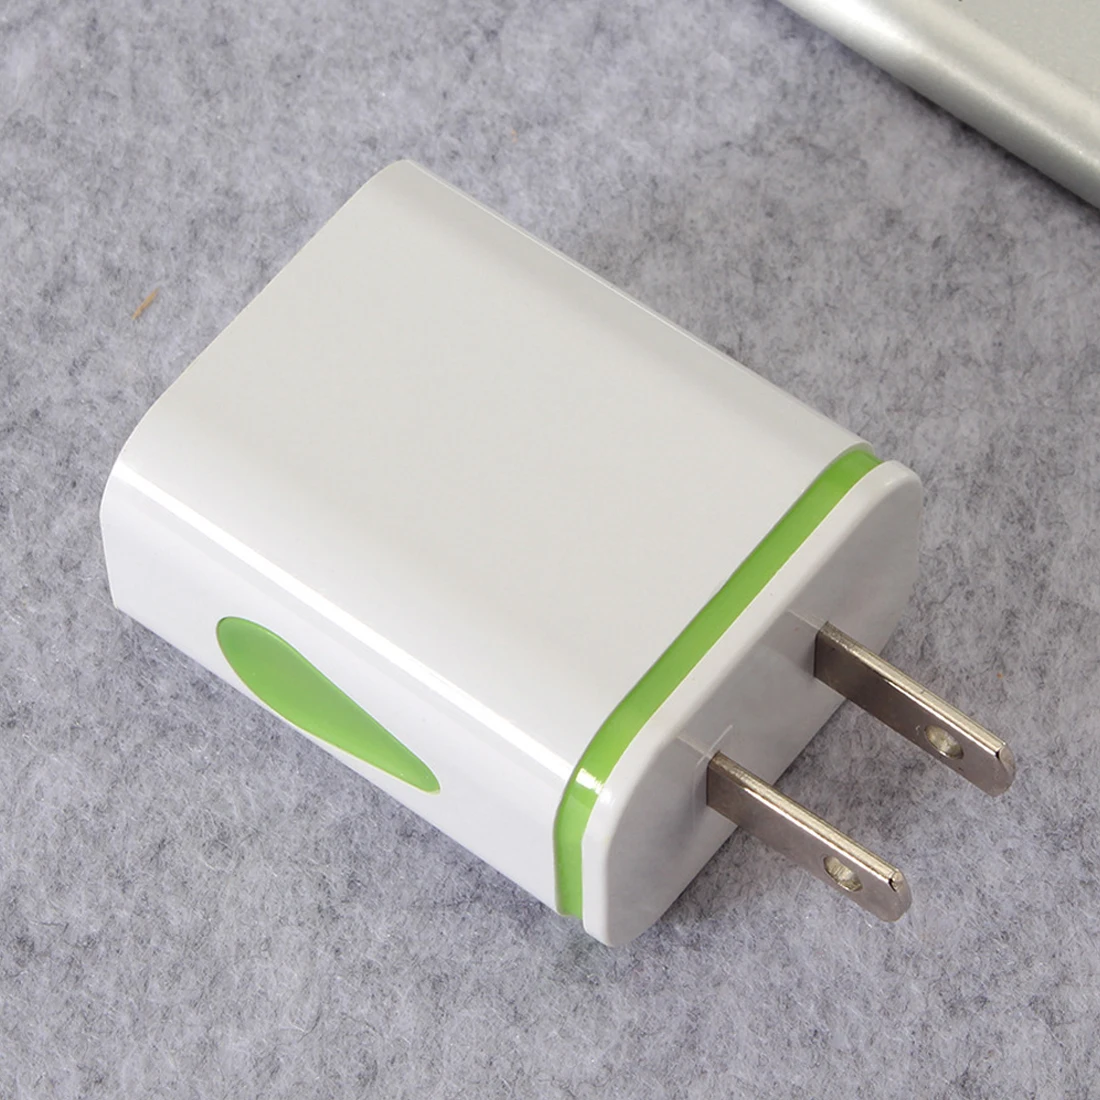 Зарядное устройство переменного тока для путешествий USB настенное зарядное устройство светодиодный двойной USB адаптер ЕС США штекер Быстрая зарядка настенный адаптер для телефона